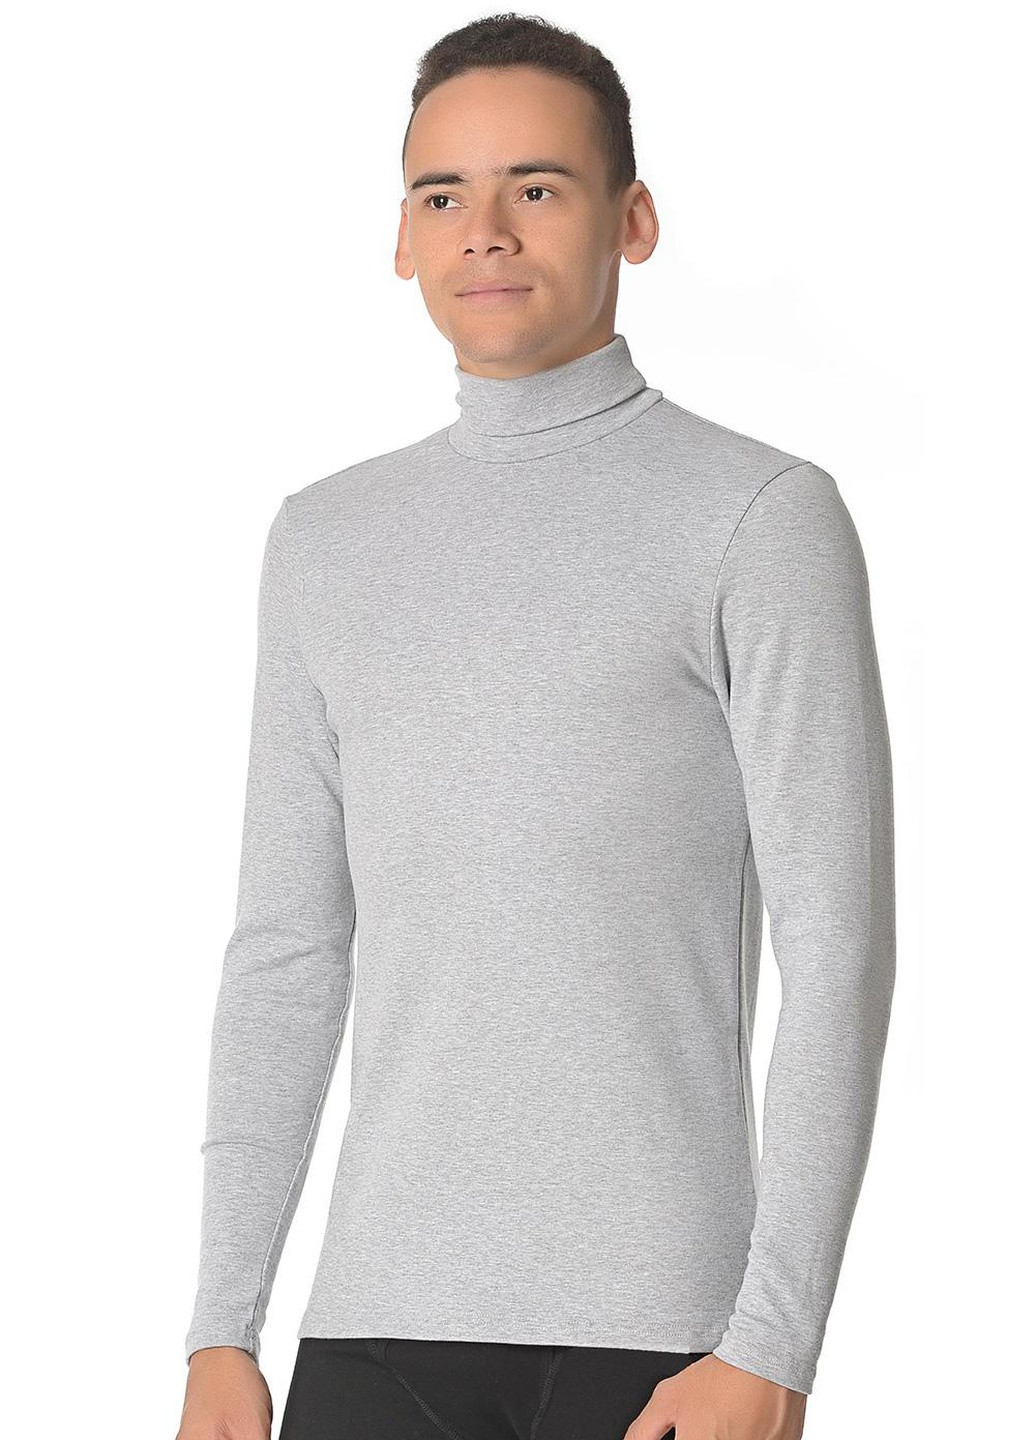 Сіра футболка чоловіча s меланжевий 211 Cornette